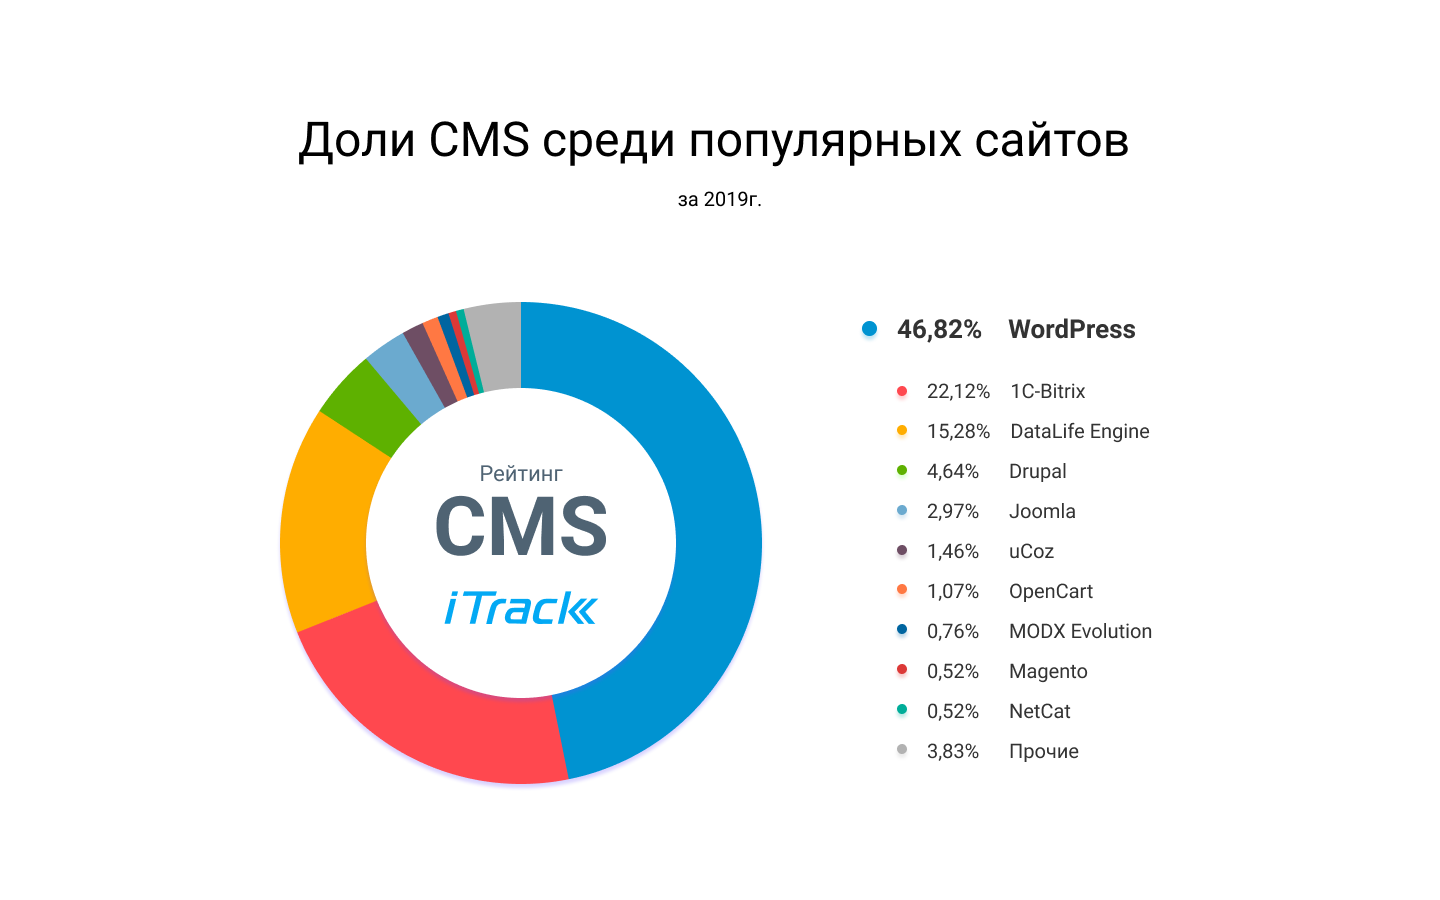 Доли CMS среди популярных сайтов в России - инфографика